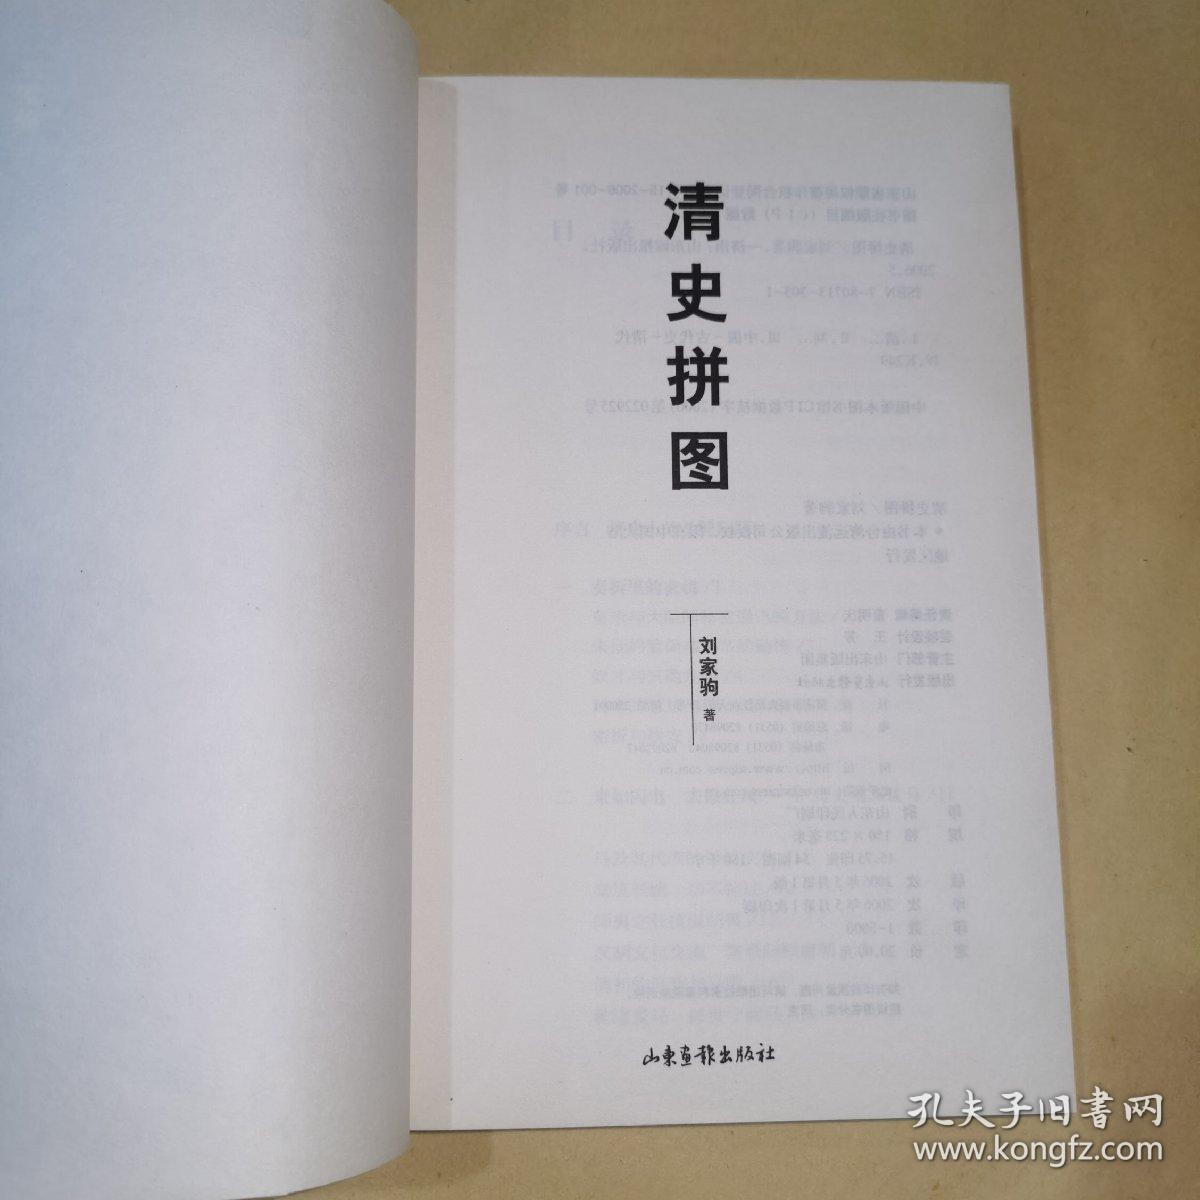 《清史拼图》台湾清史研究专家刘家驹著